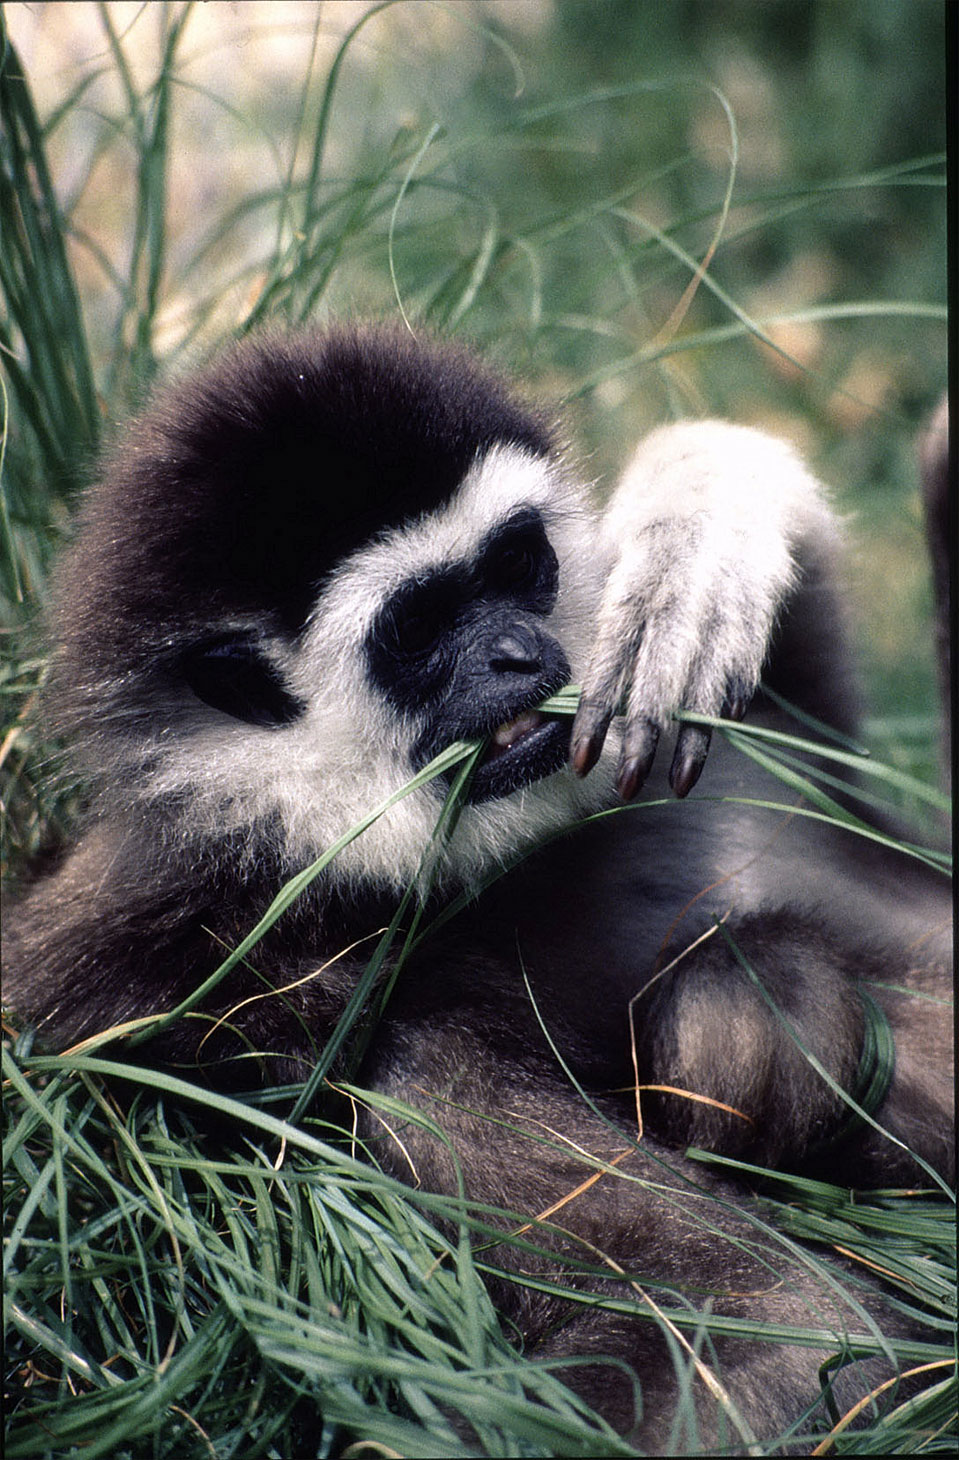 The lar or white-handed gibbon (Hylobates lar).